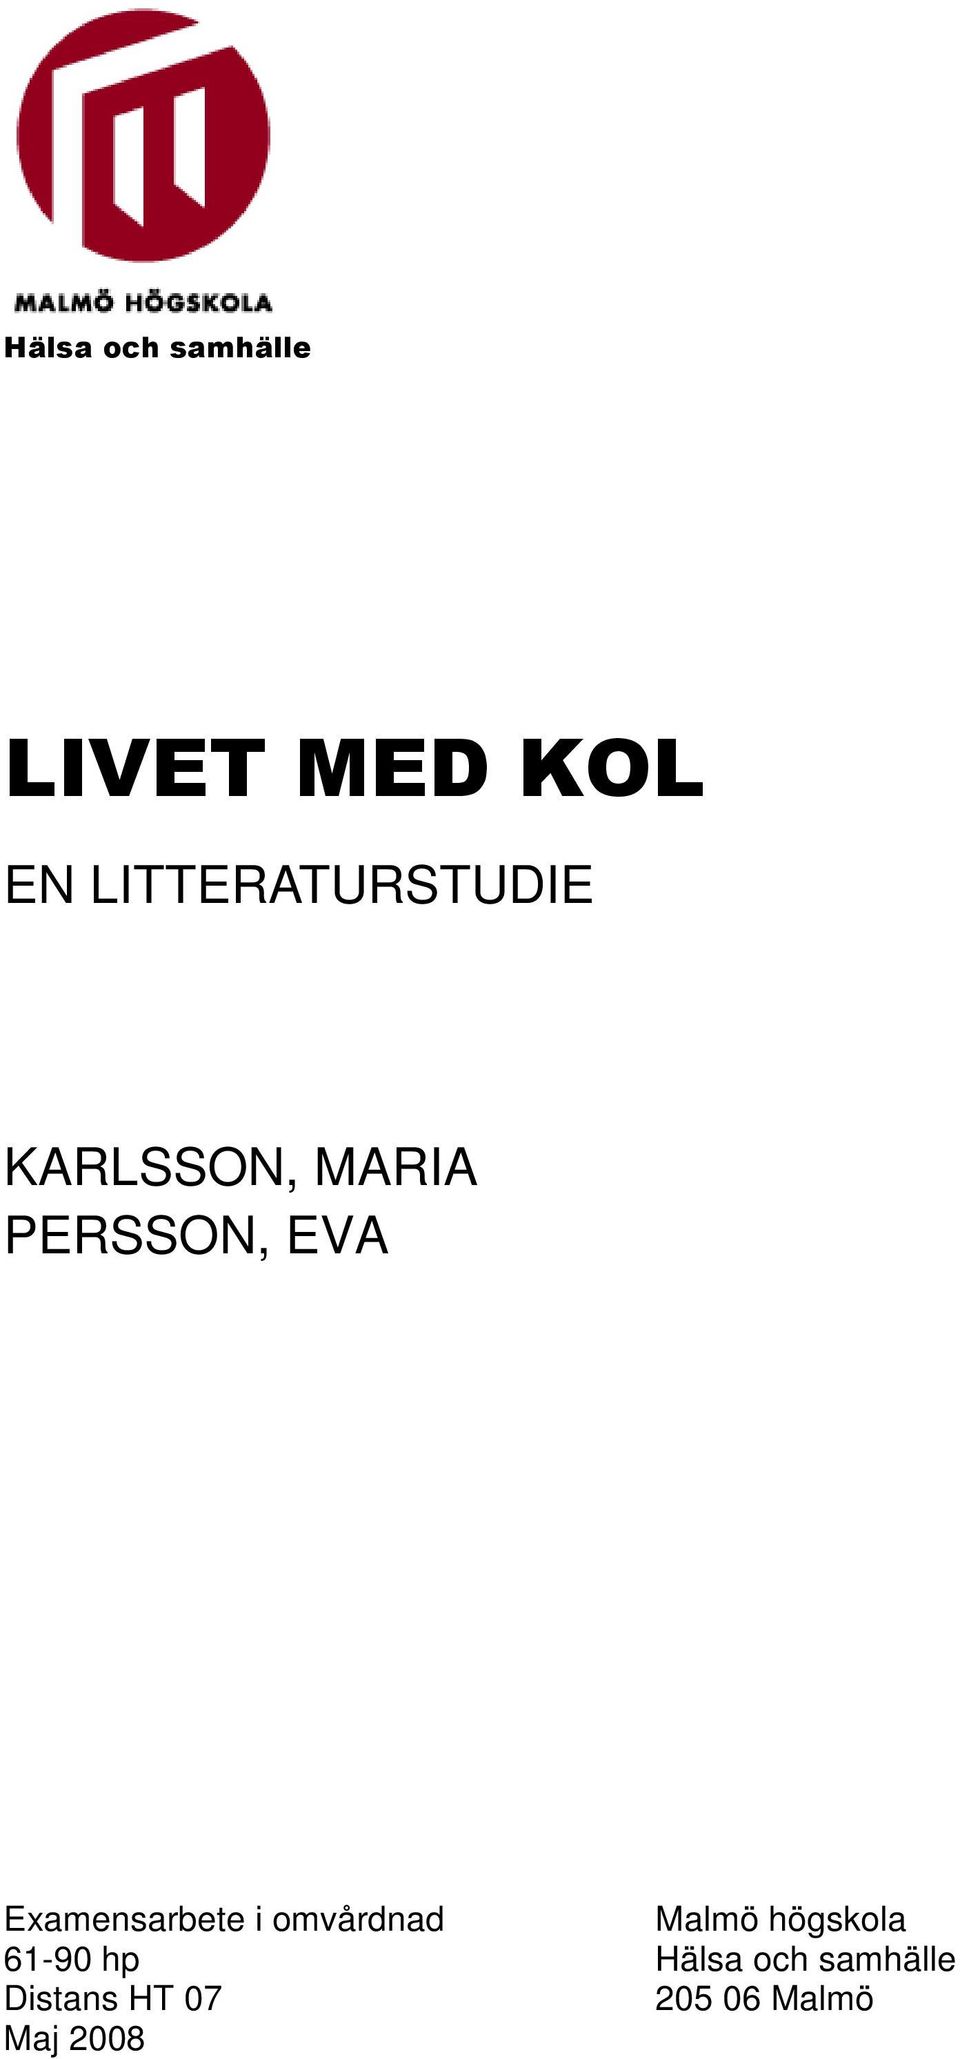 Examensarbete i omvårdnad Malmö högskola 61-90